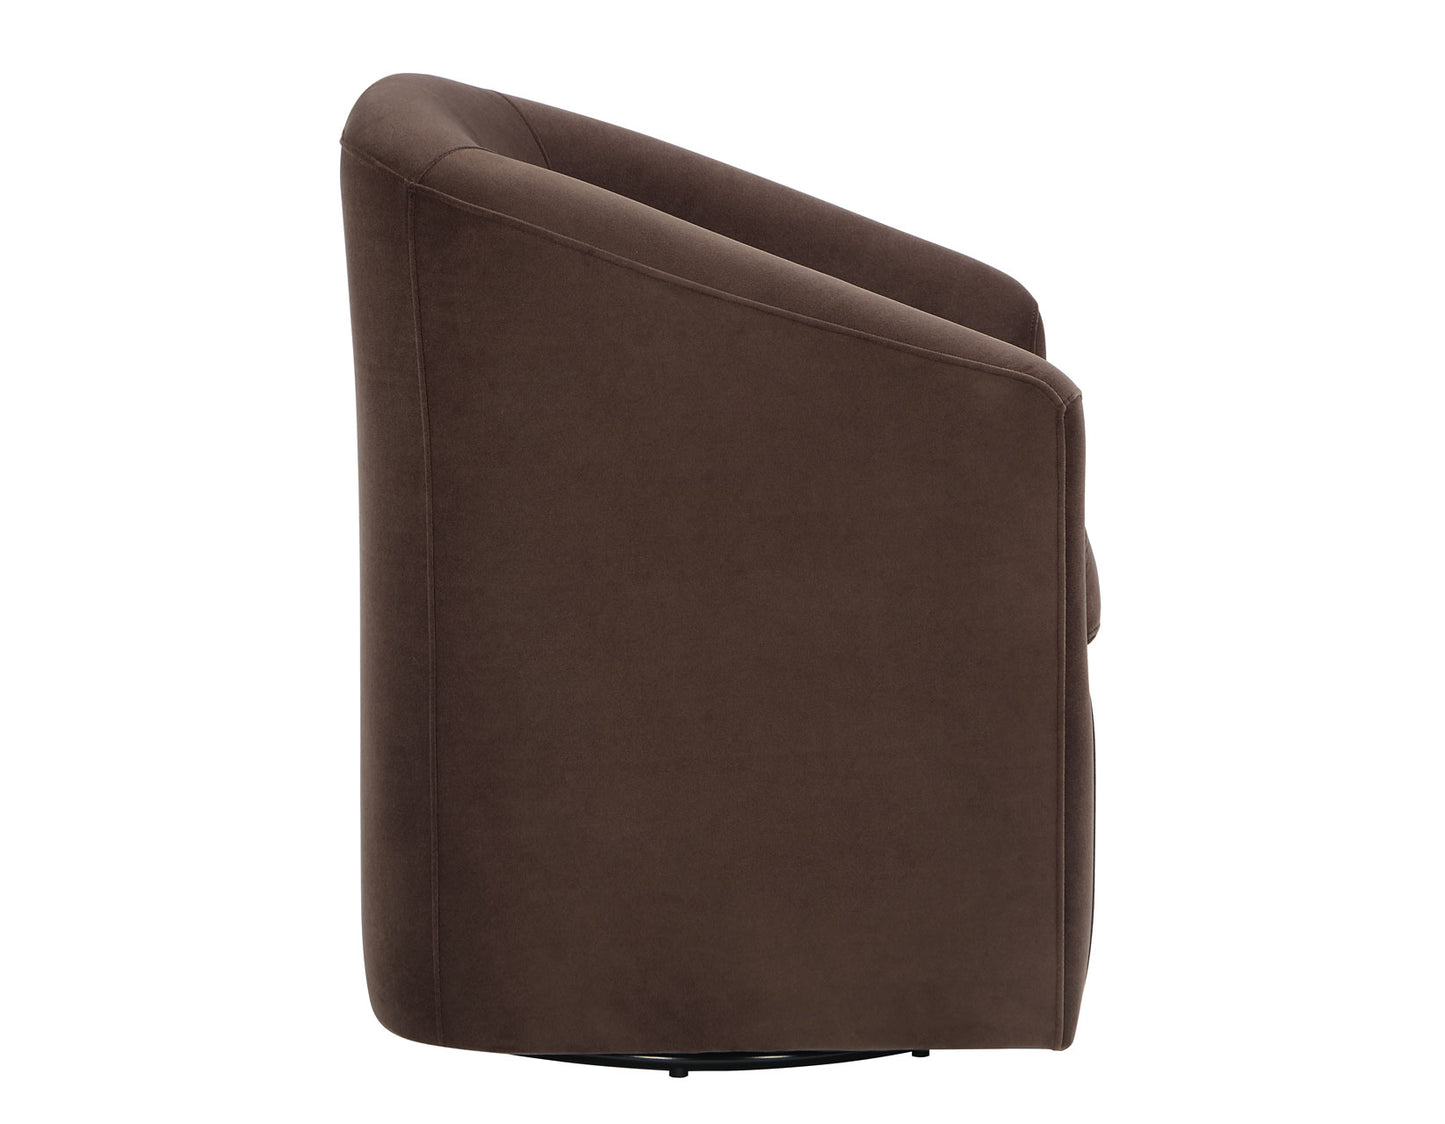 Arlo Upholstered Swivel Barrel Chair, Cocoa Velvet